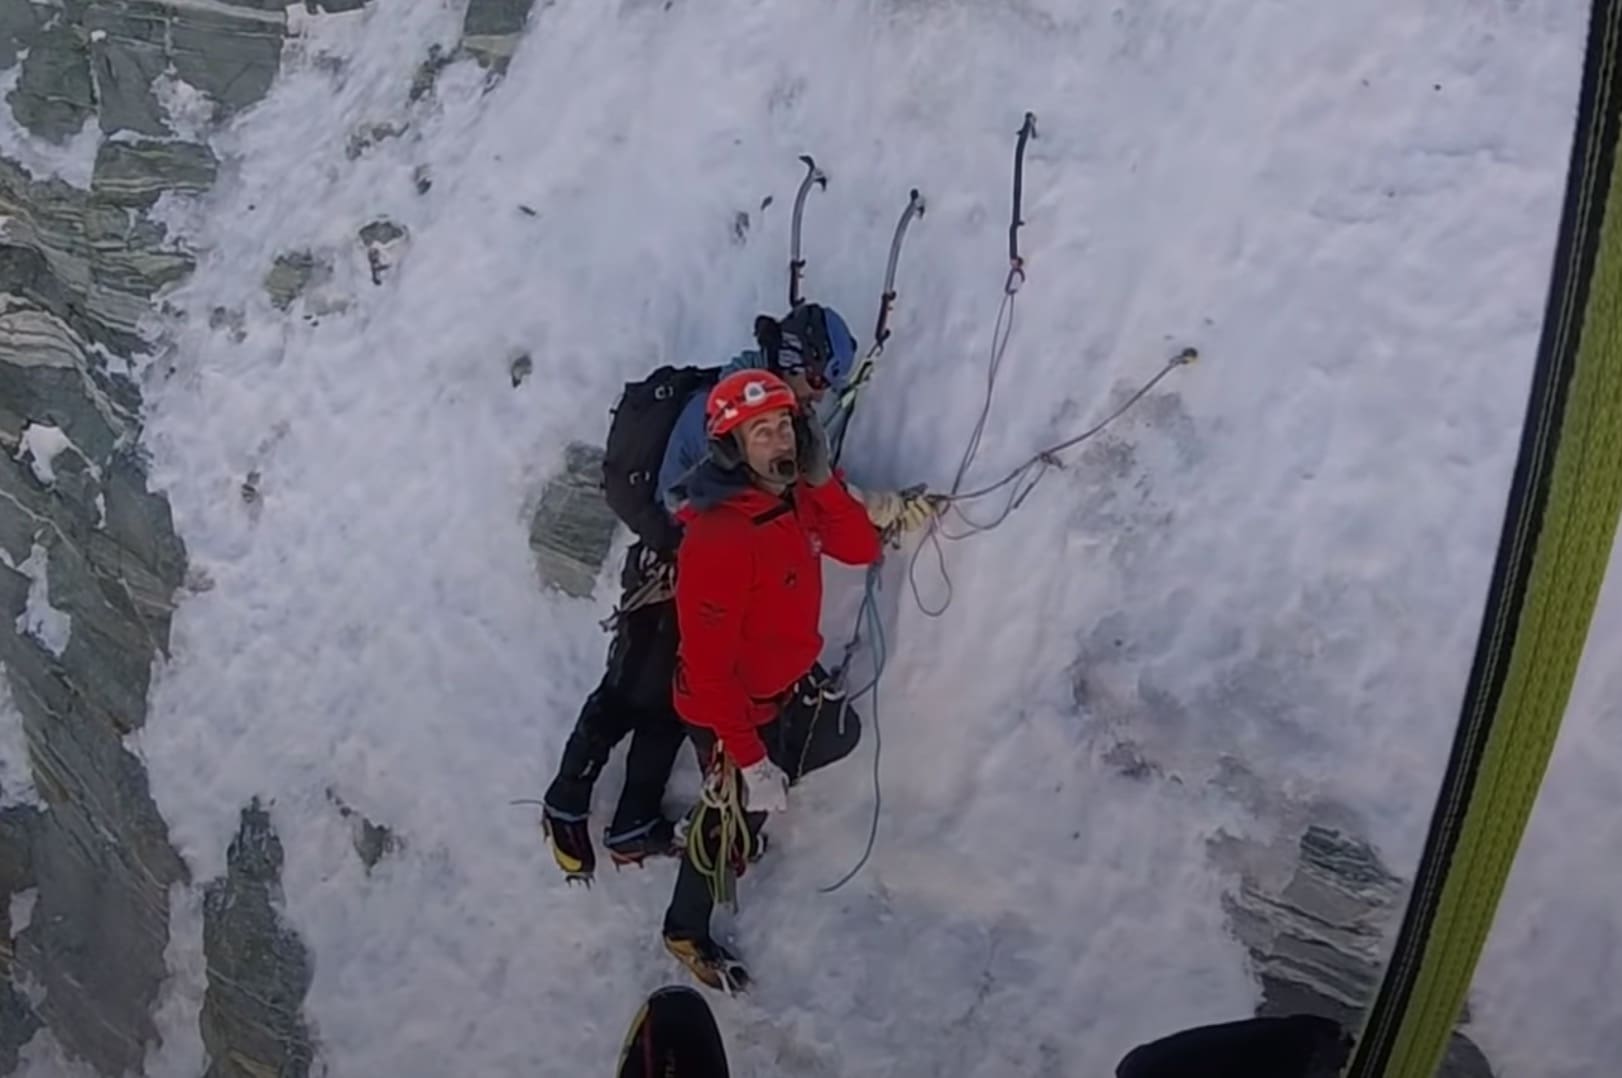 VIDEO: Climber Airlifted From Matterhorn After Broken Crampon Halts Ascent